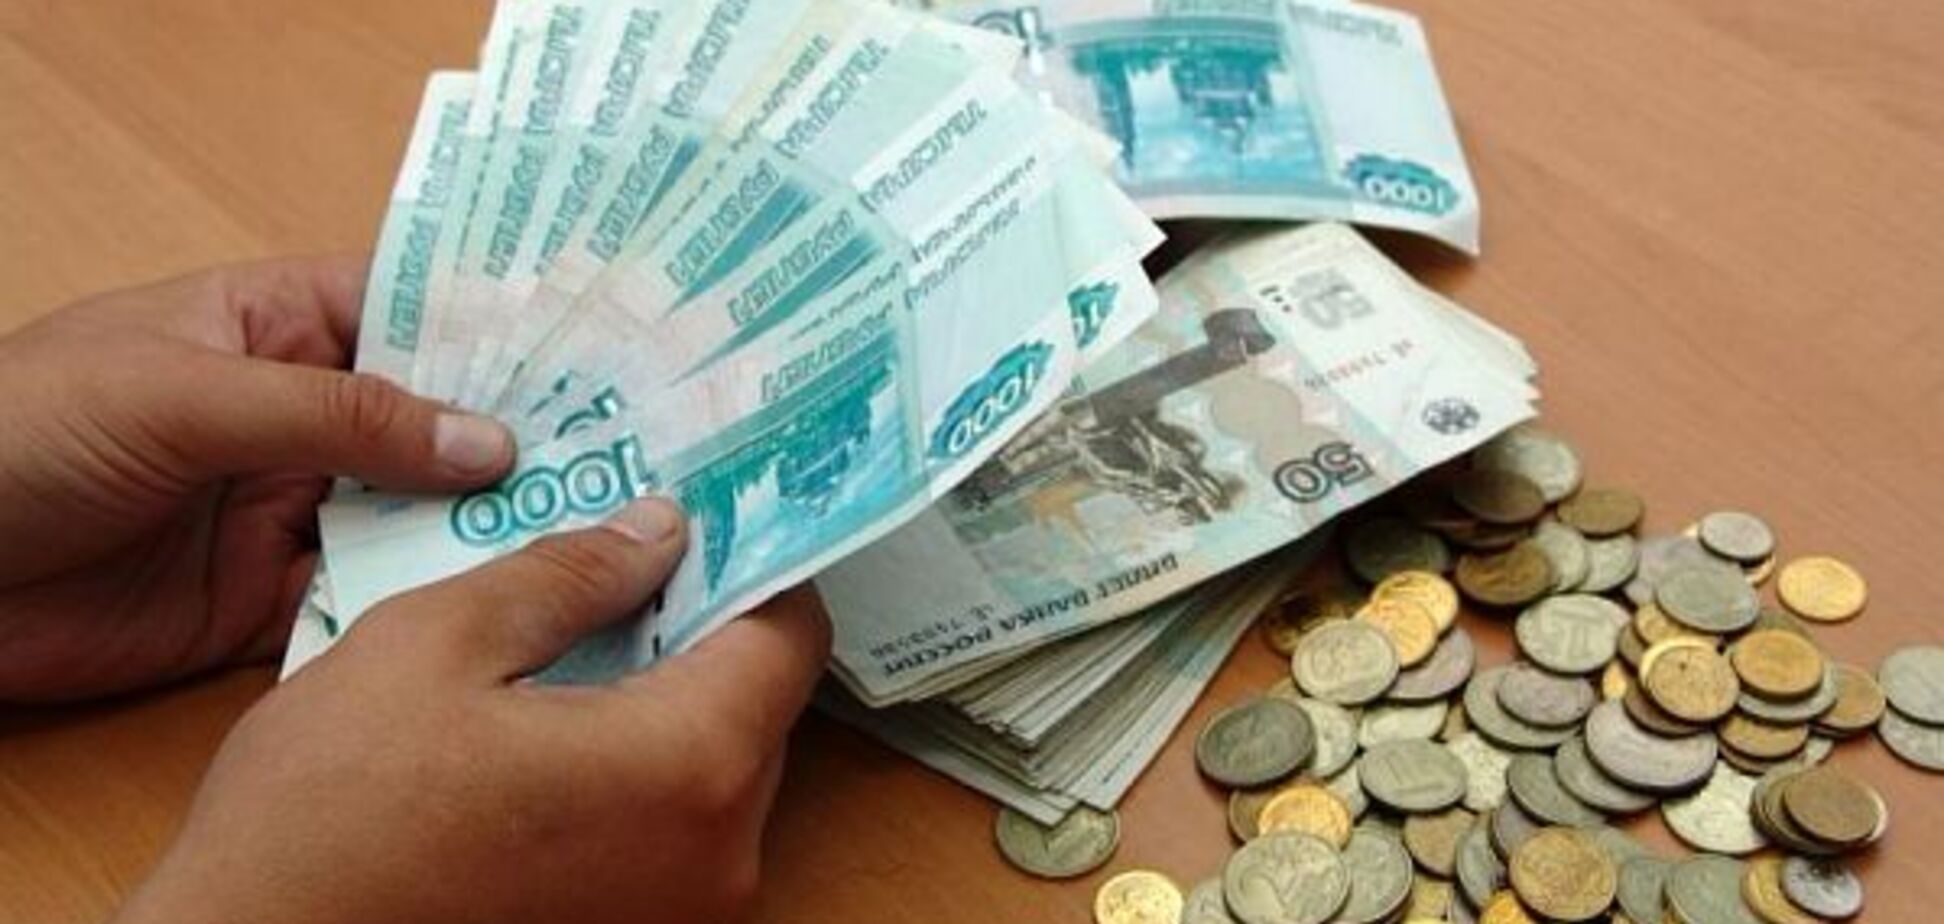 Затянуть пояса: в 'ЛНР' хотят приостановить выплаты бюджетникам